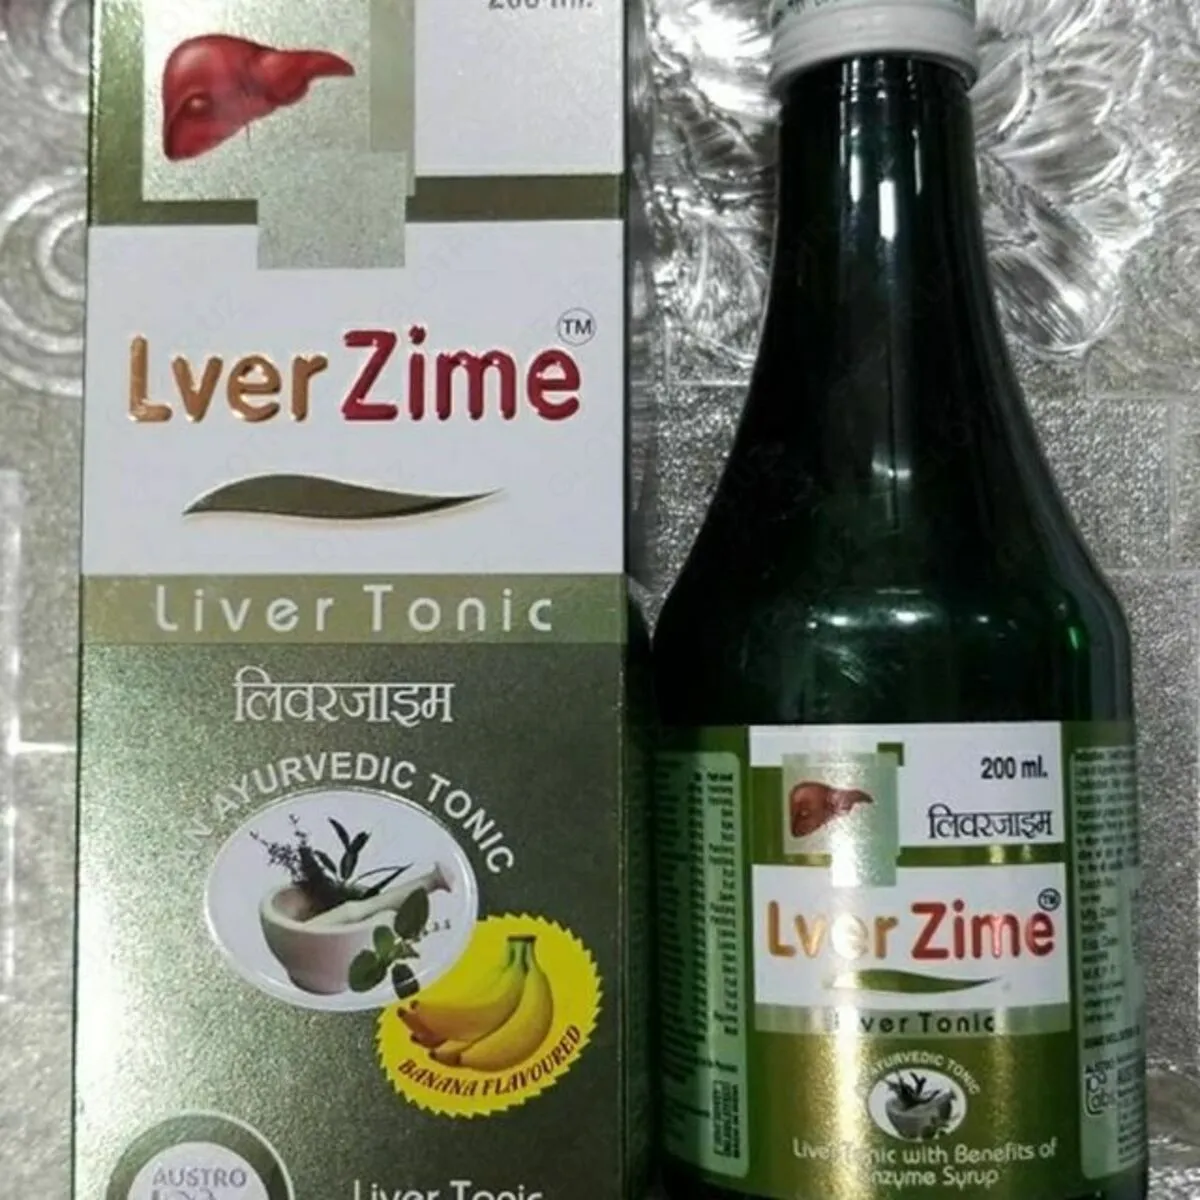 Liver Zime тоник для печени и очистки крови#3